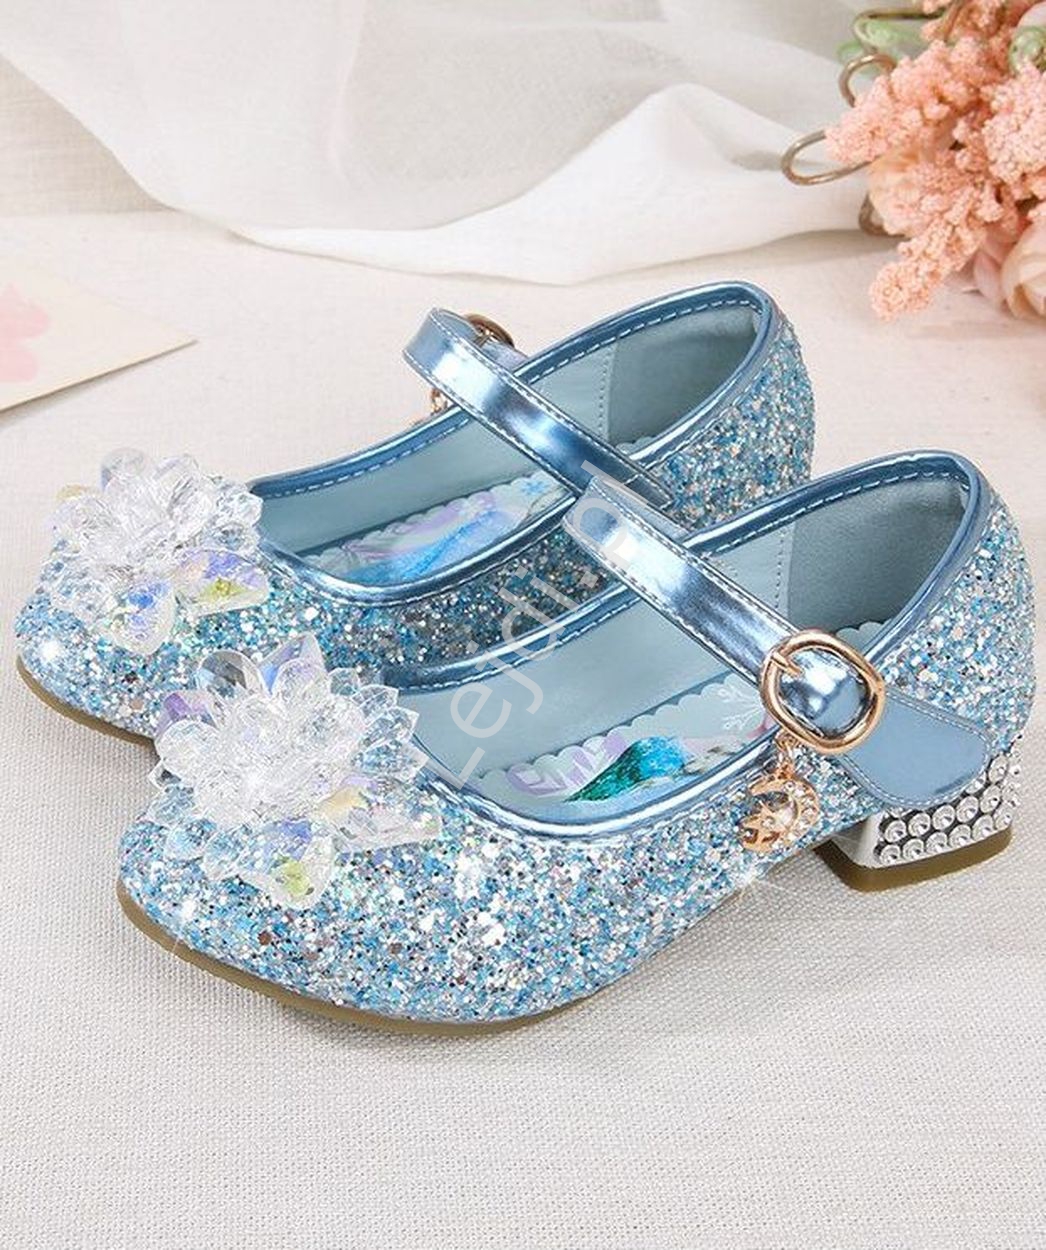 Brokatowe niebieskie buty z kryształkami na obcasiku Frozen, Kraina Lodu, Elza 1788-22